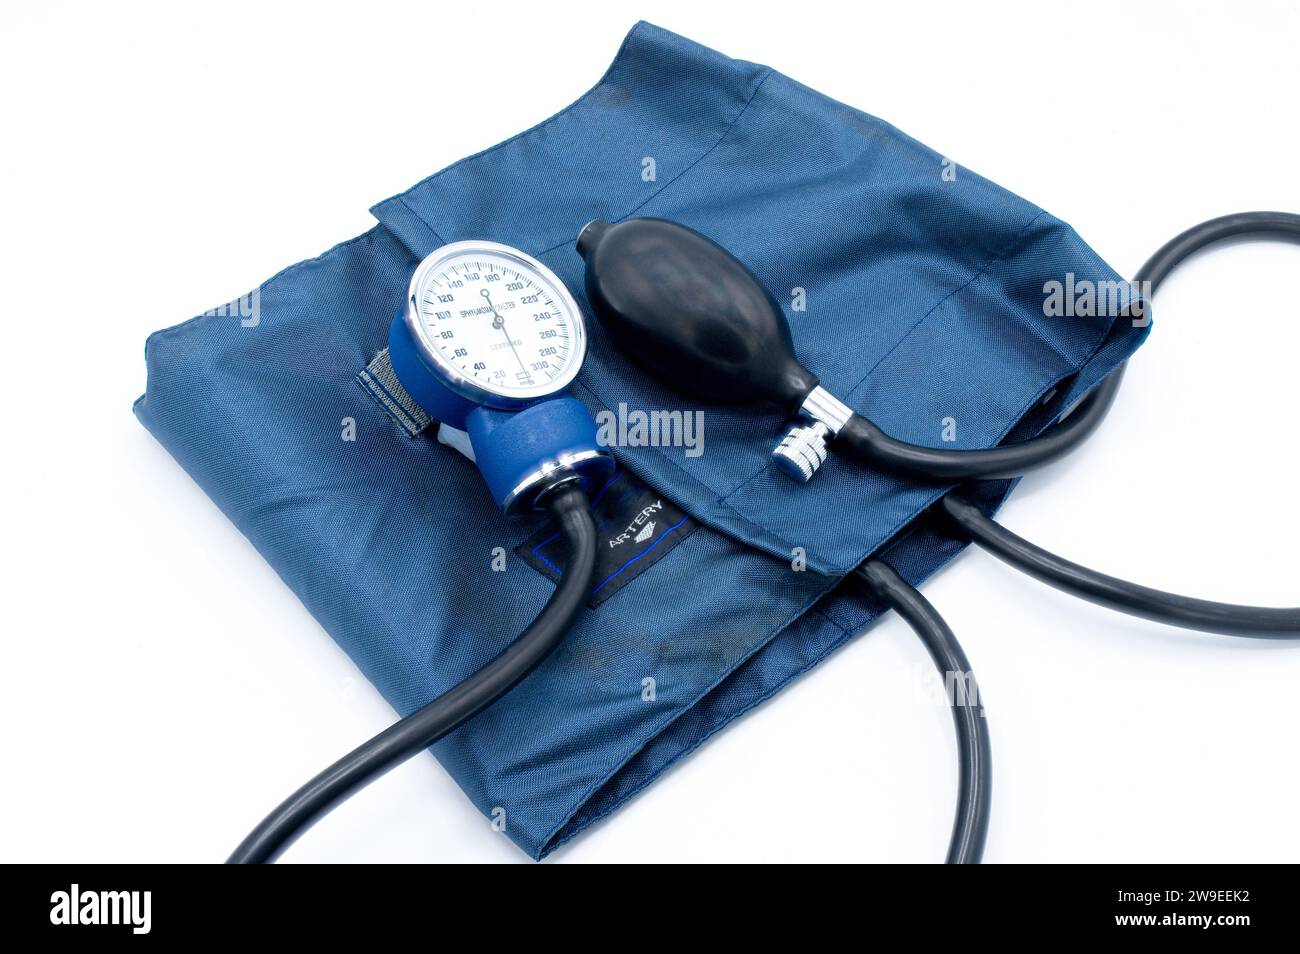 Sphygmomanomètre dispositif médical de mesure de la pression artérielle. Il se compose d'un brassard en caoutchouc gonflable, qui est enroulé autour de la partie supérieure A. Banque D'Images